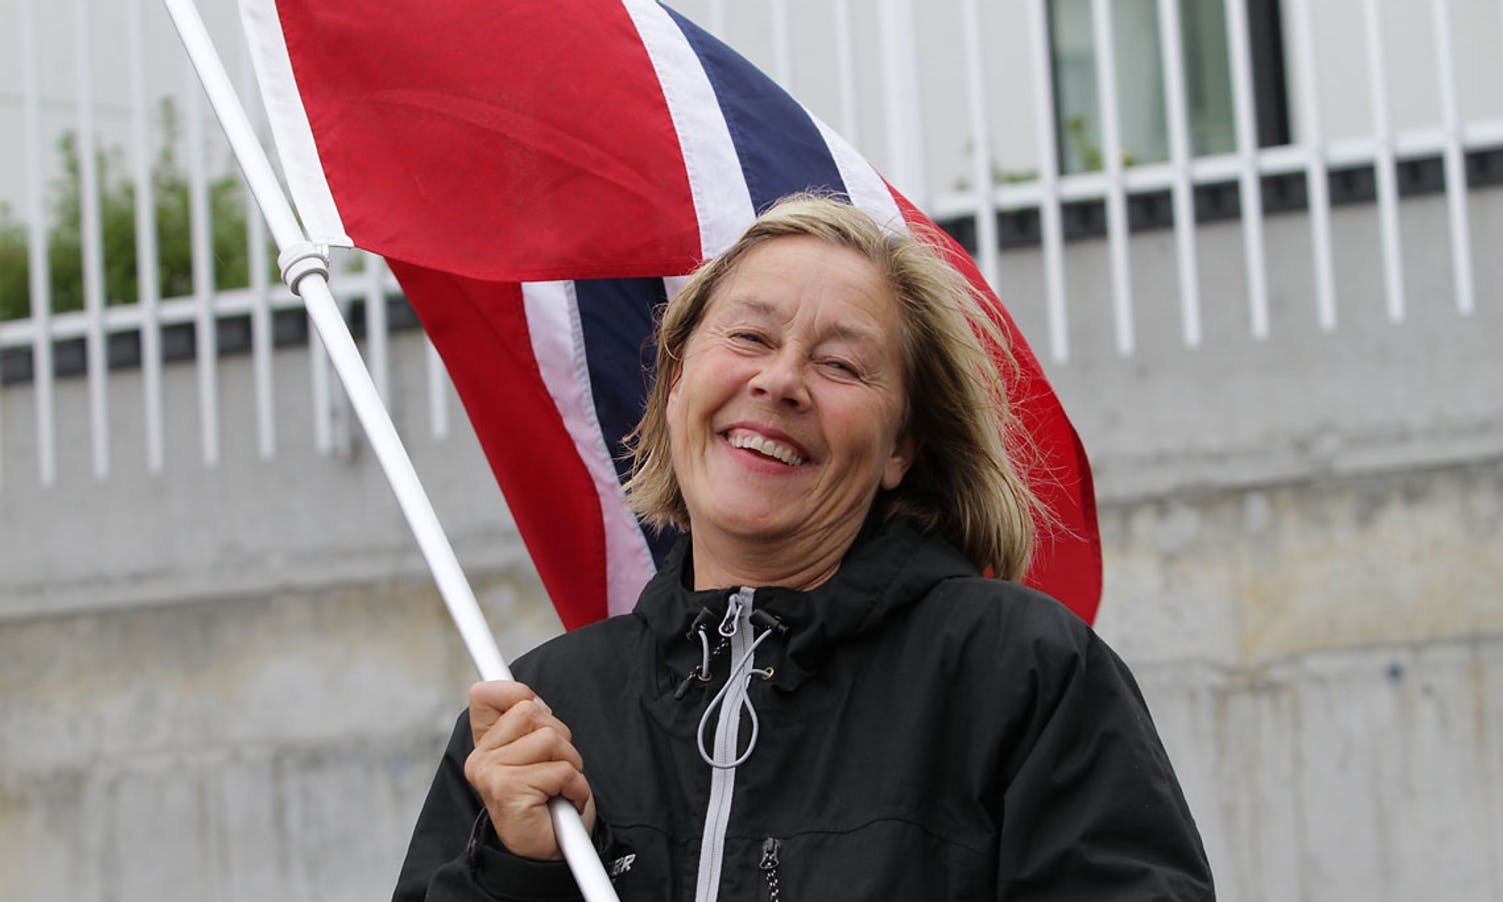 Kultursjef Lisbeth Axelsen. (Foto: Kjetil Vasby Bruarøy)